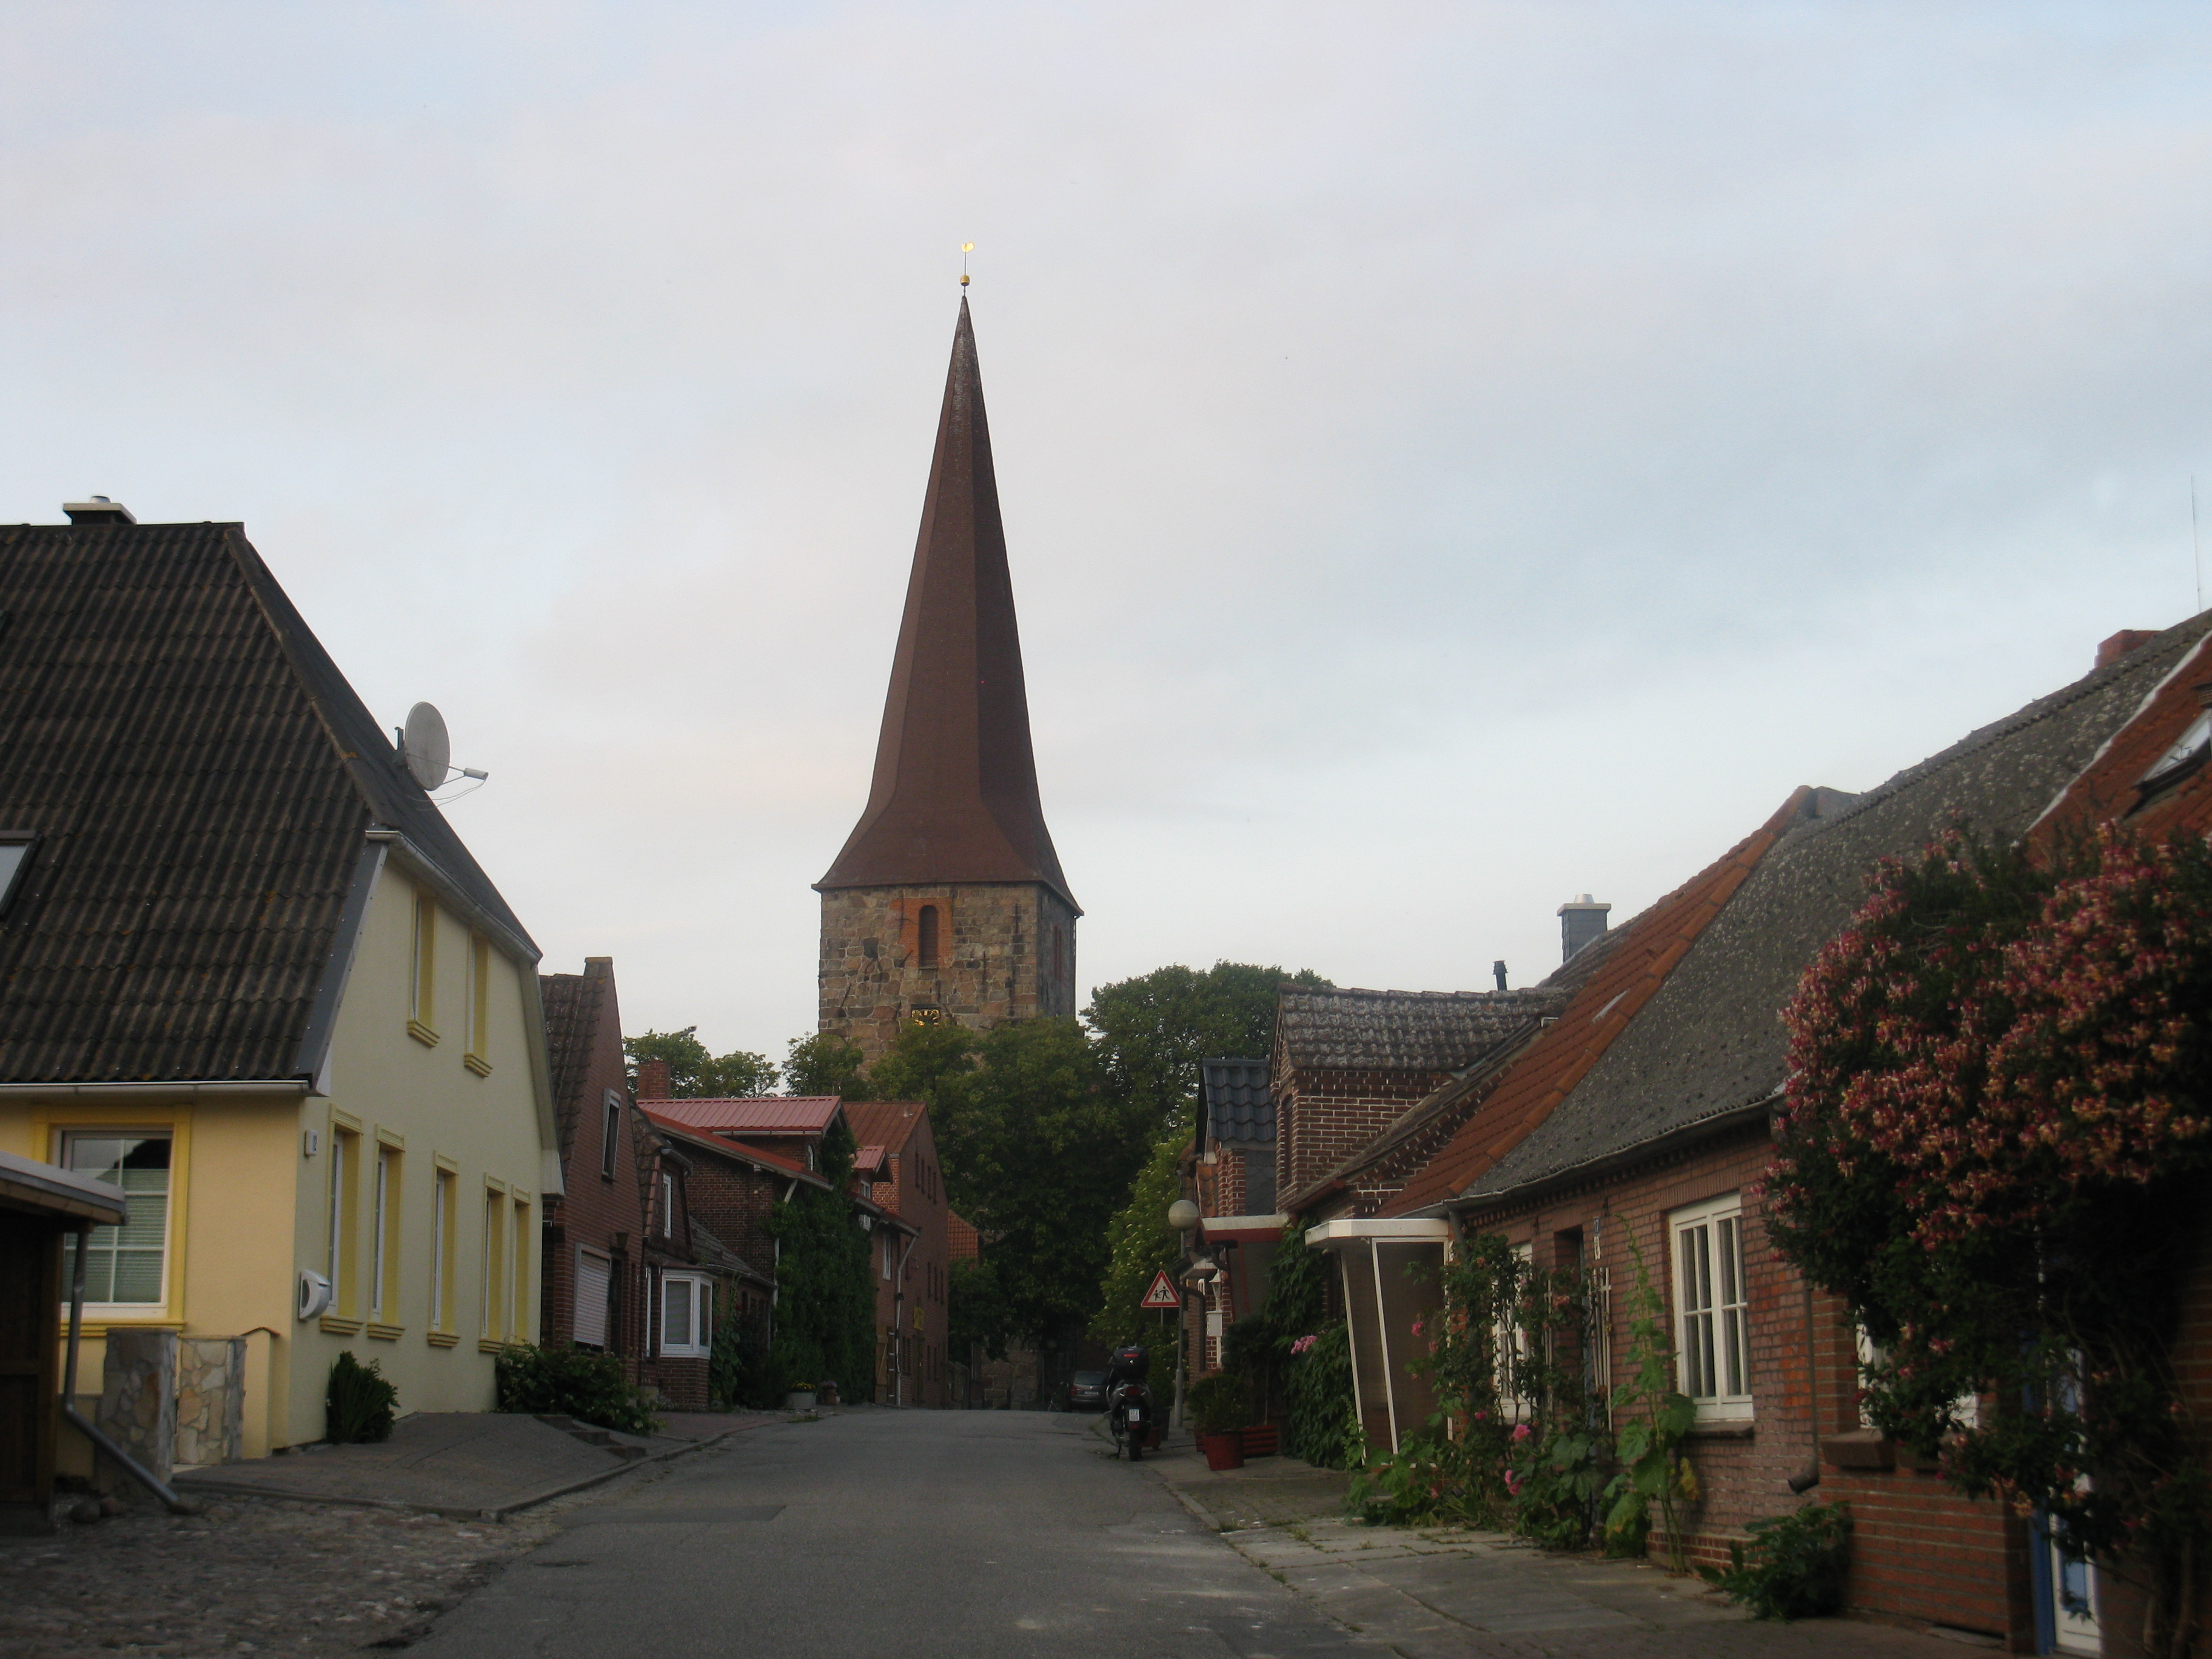 Petersdorf